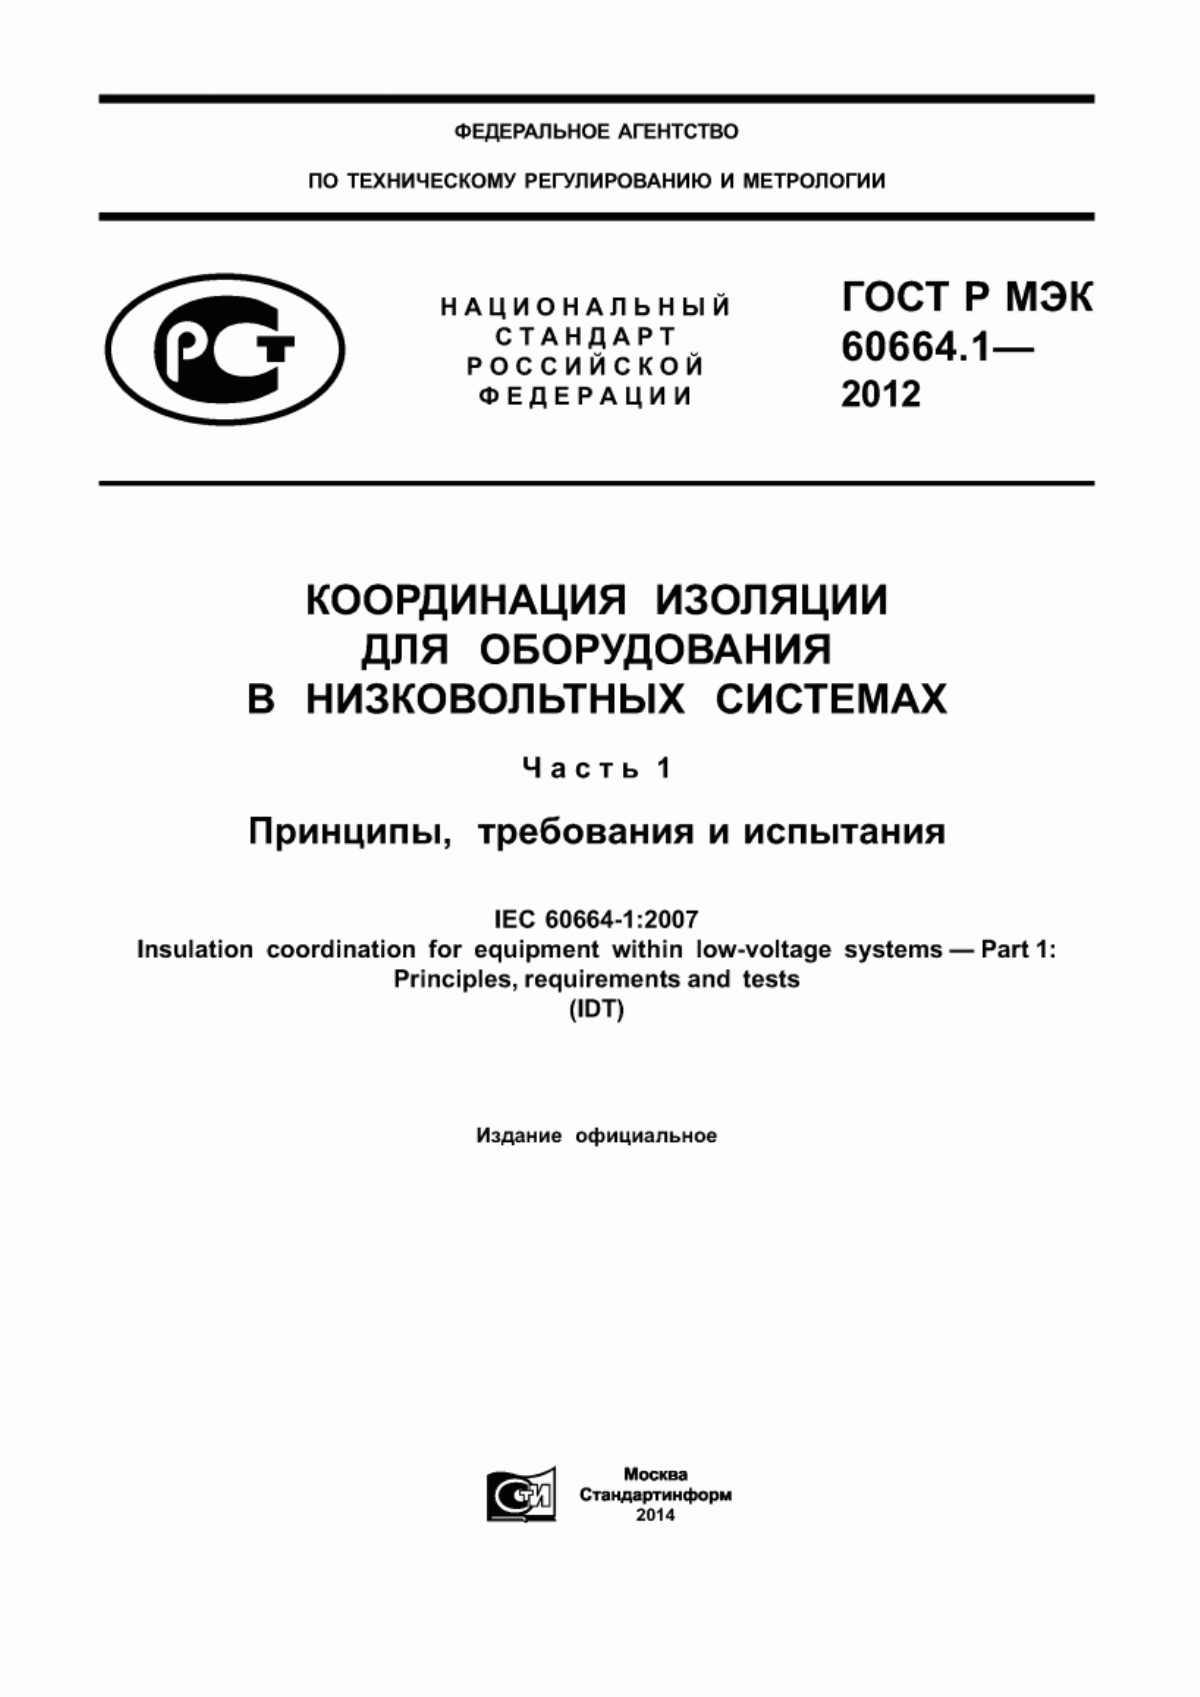 ГОСТ Р МЭК 60664.1-2012 Координация изоляции для оборудования в низковольтных системах. Часть 1. Принципы, требования и испытания